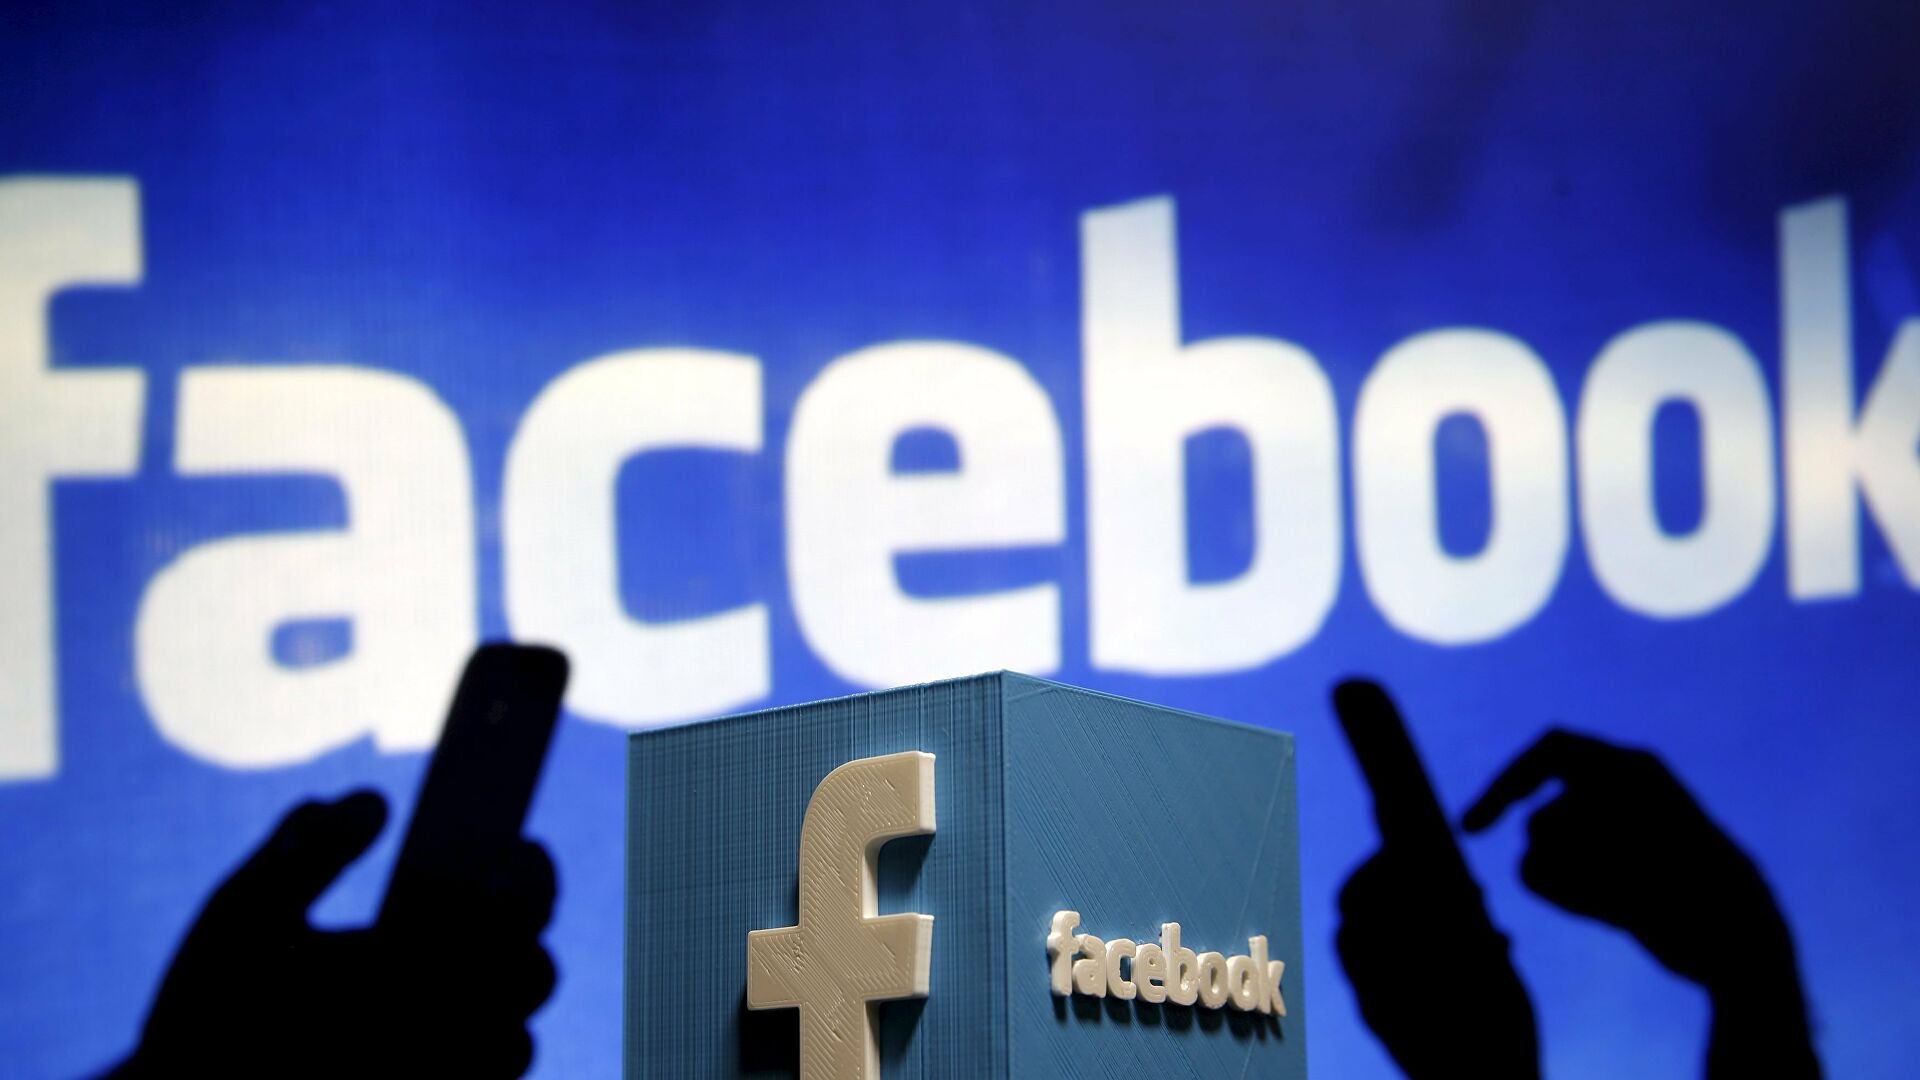  Analiză AFP: Cu modelul său de acțiune denunțat, Facebook se confruntă cu cea mai gravă criză din istoria sa